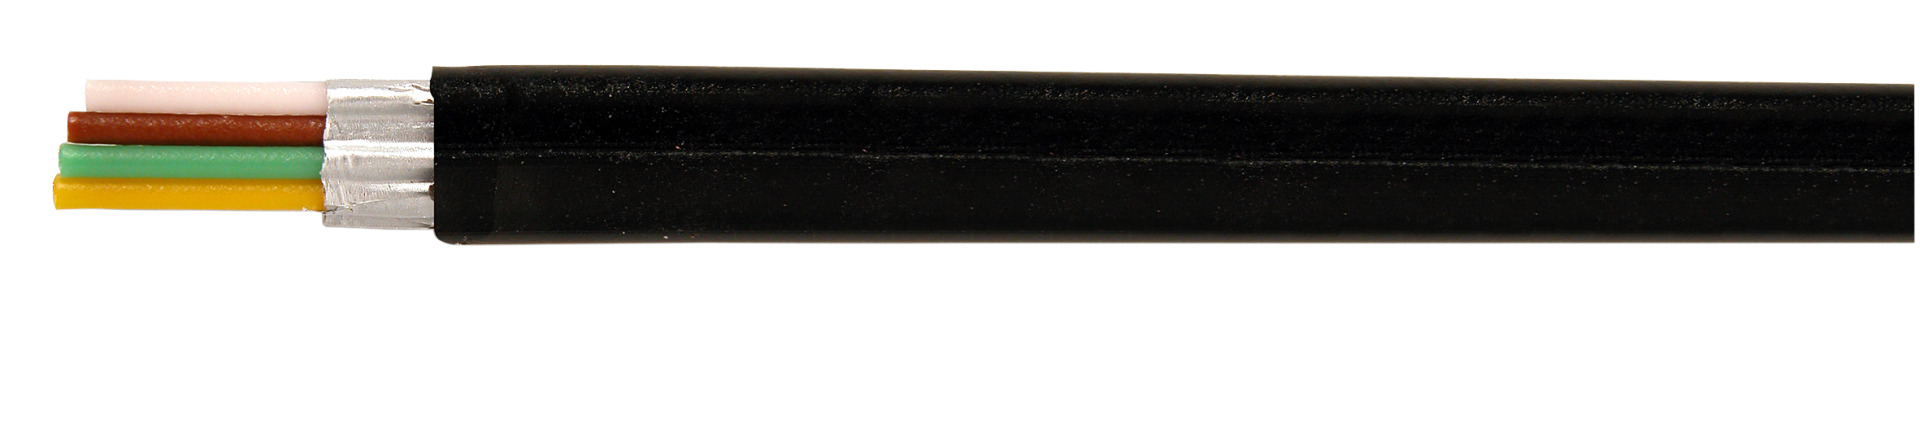 Modular-Flachkabel 4-adrig geschirmt, schwarz, Ring 100 m